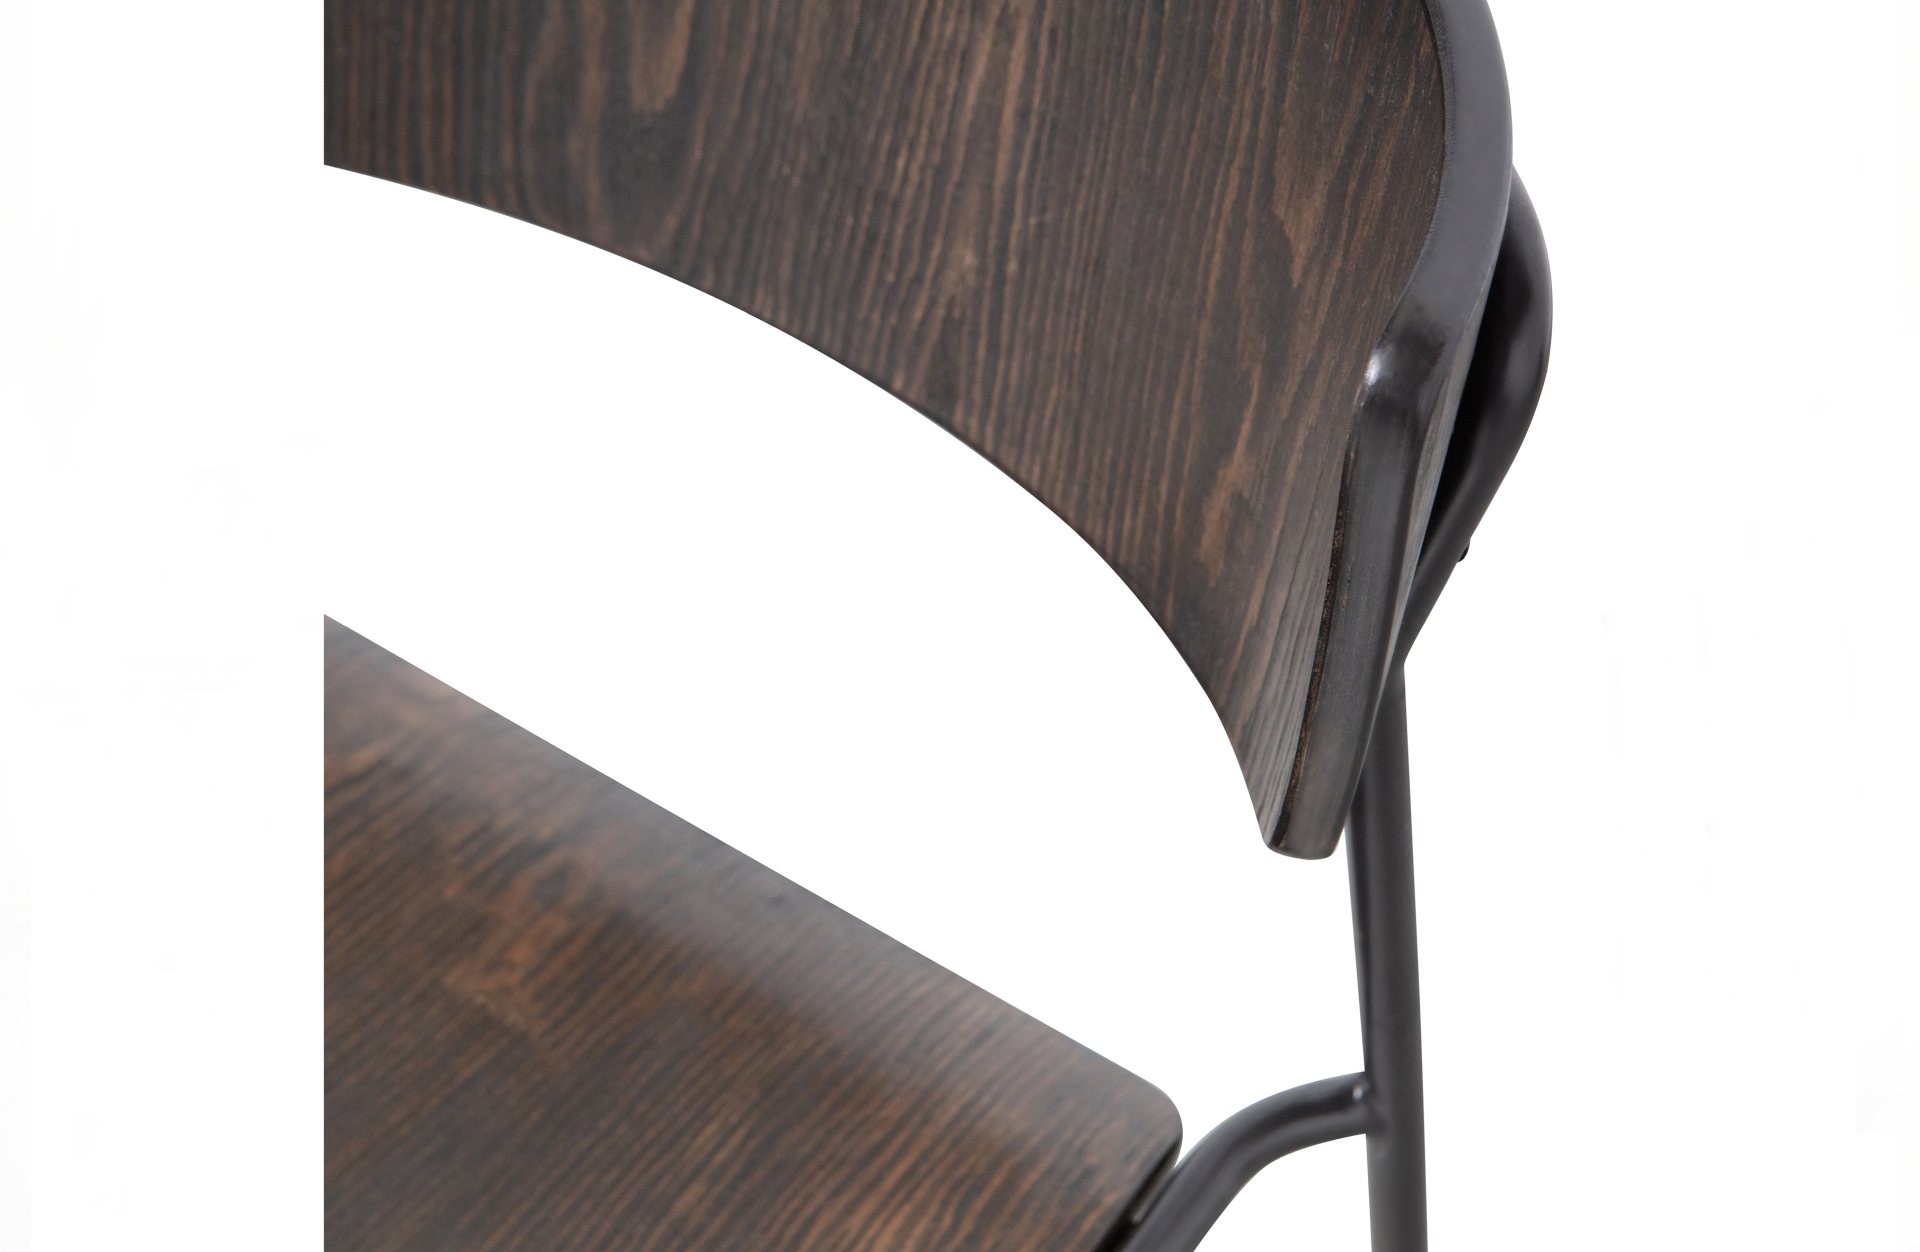 Der Esszimmerstuhl Ciro überzeugt mit seinem modernen Design. Gefertigt wurde er aus Sperrholz, welches einen braunen Farbton besitzt. Das Gestell ist aus Metall und hat eine schwarze Farbe. Die Sitzhöhe beträgt 45 cm.